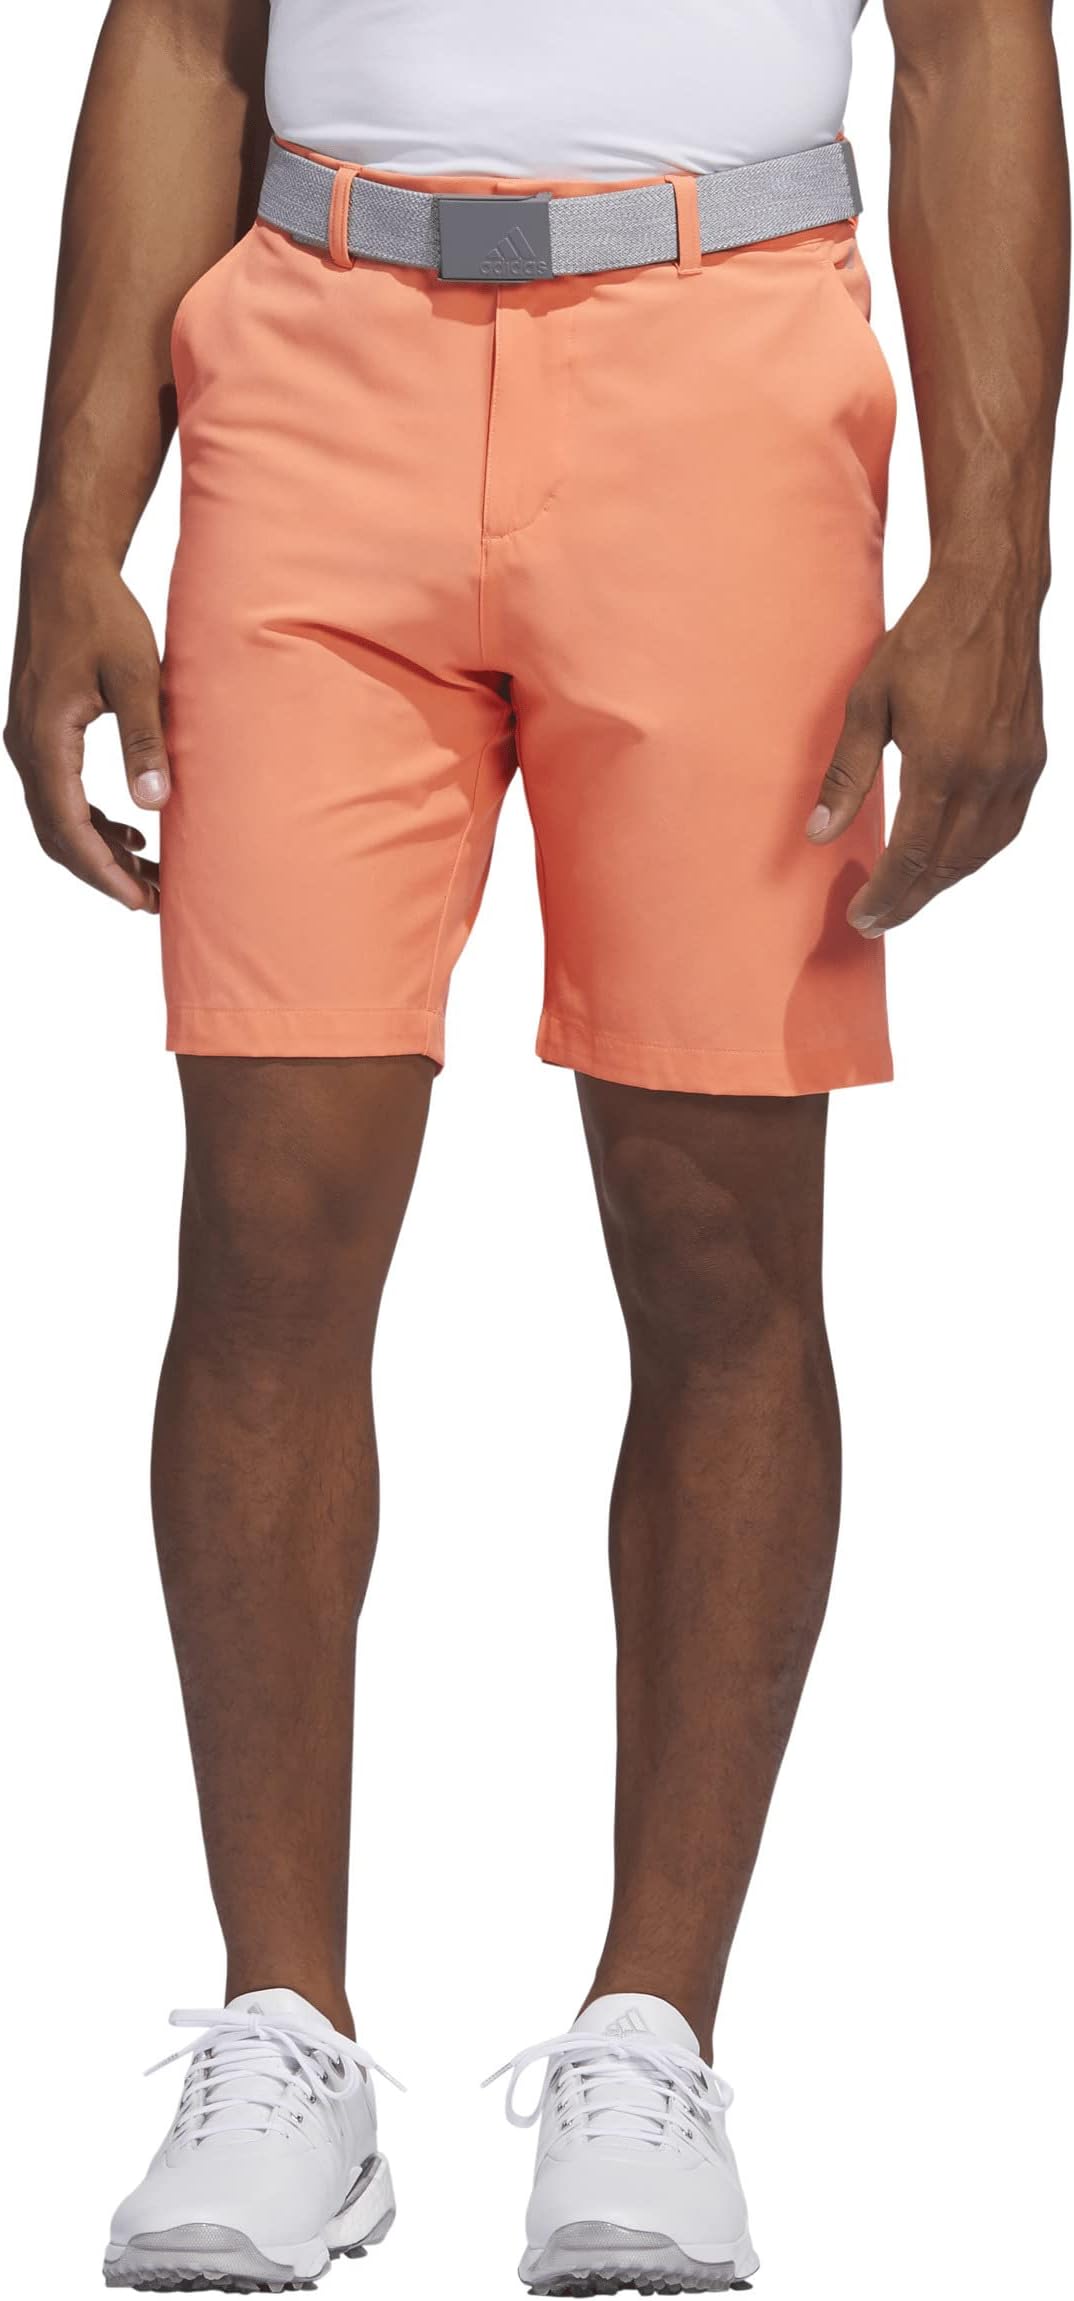 Шорты для гольфа Ultimate365 8,5 дюйма adidas, цвет Coral Fusion